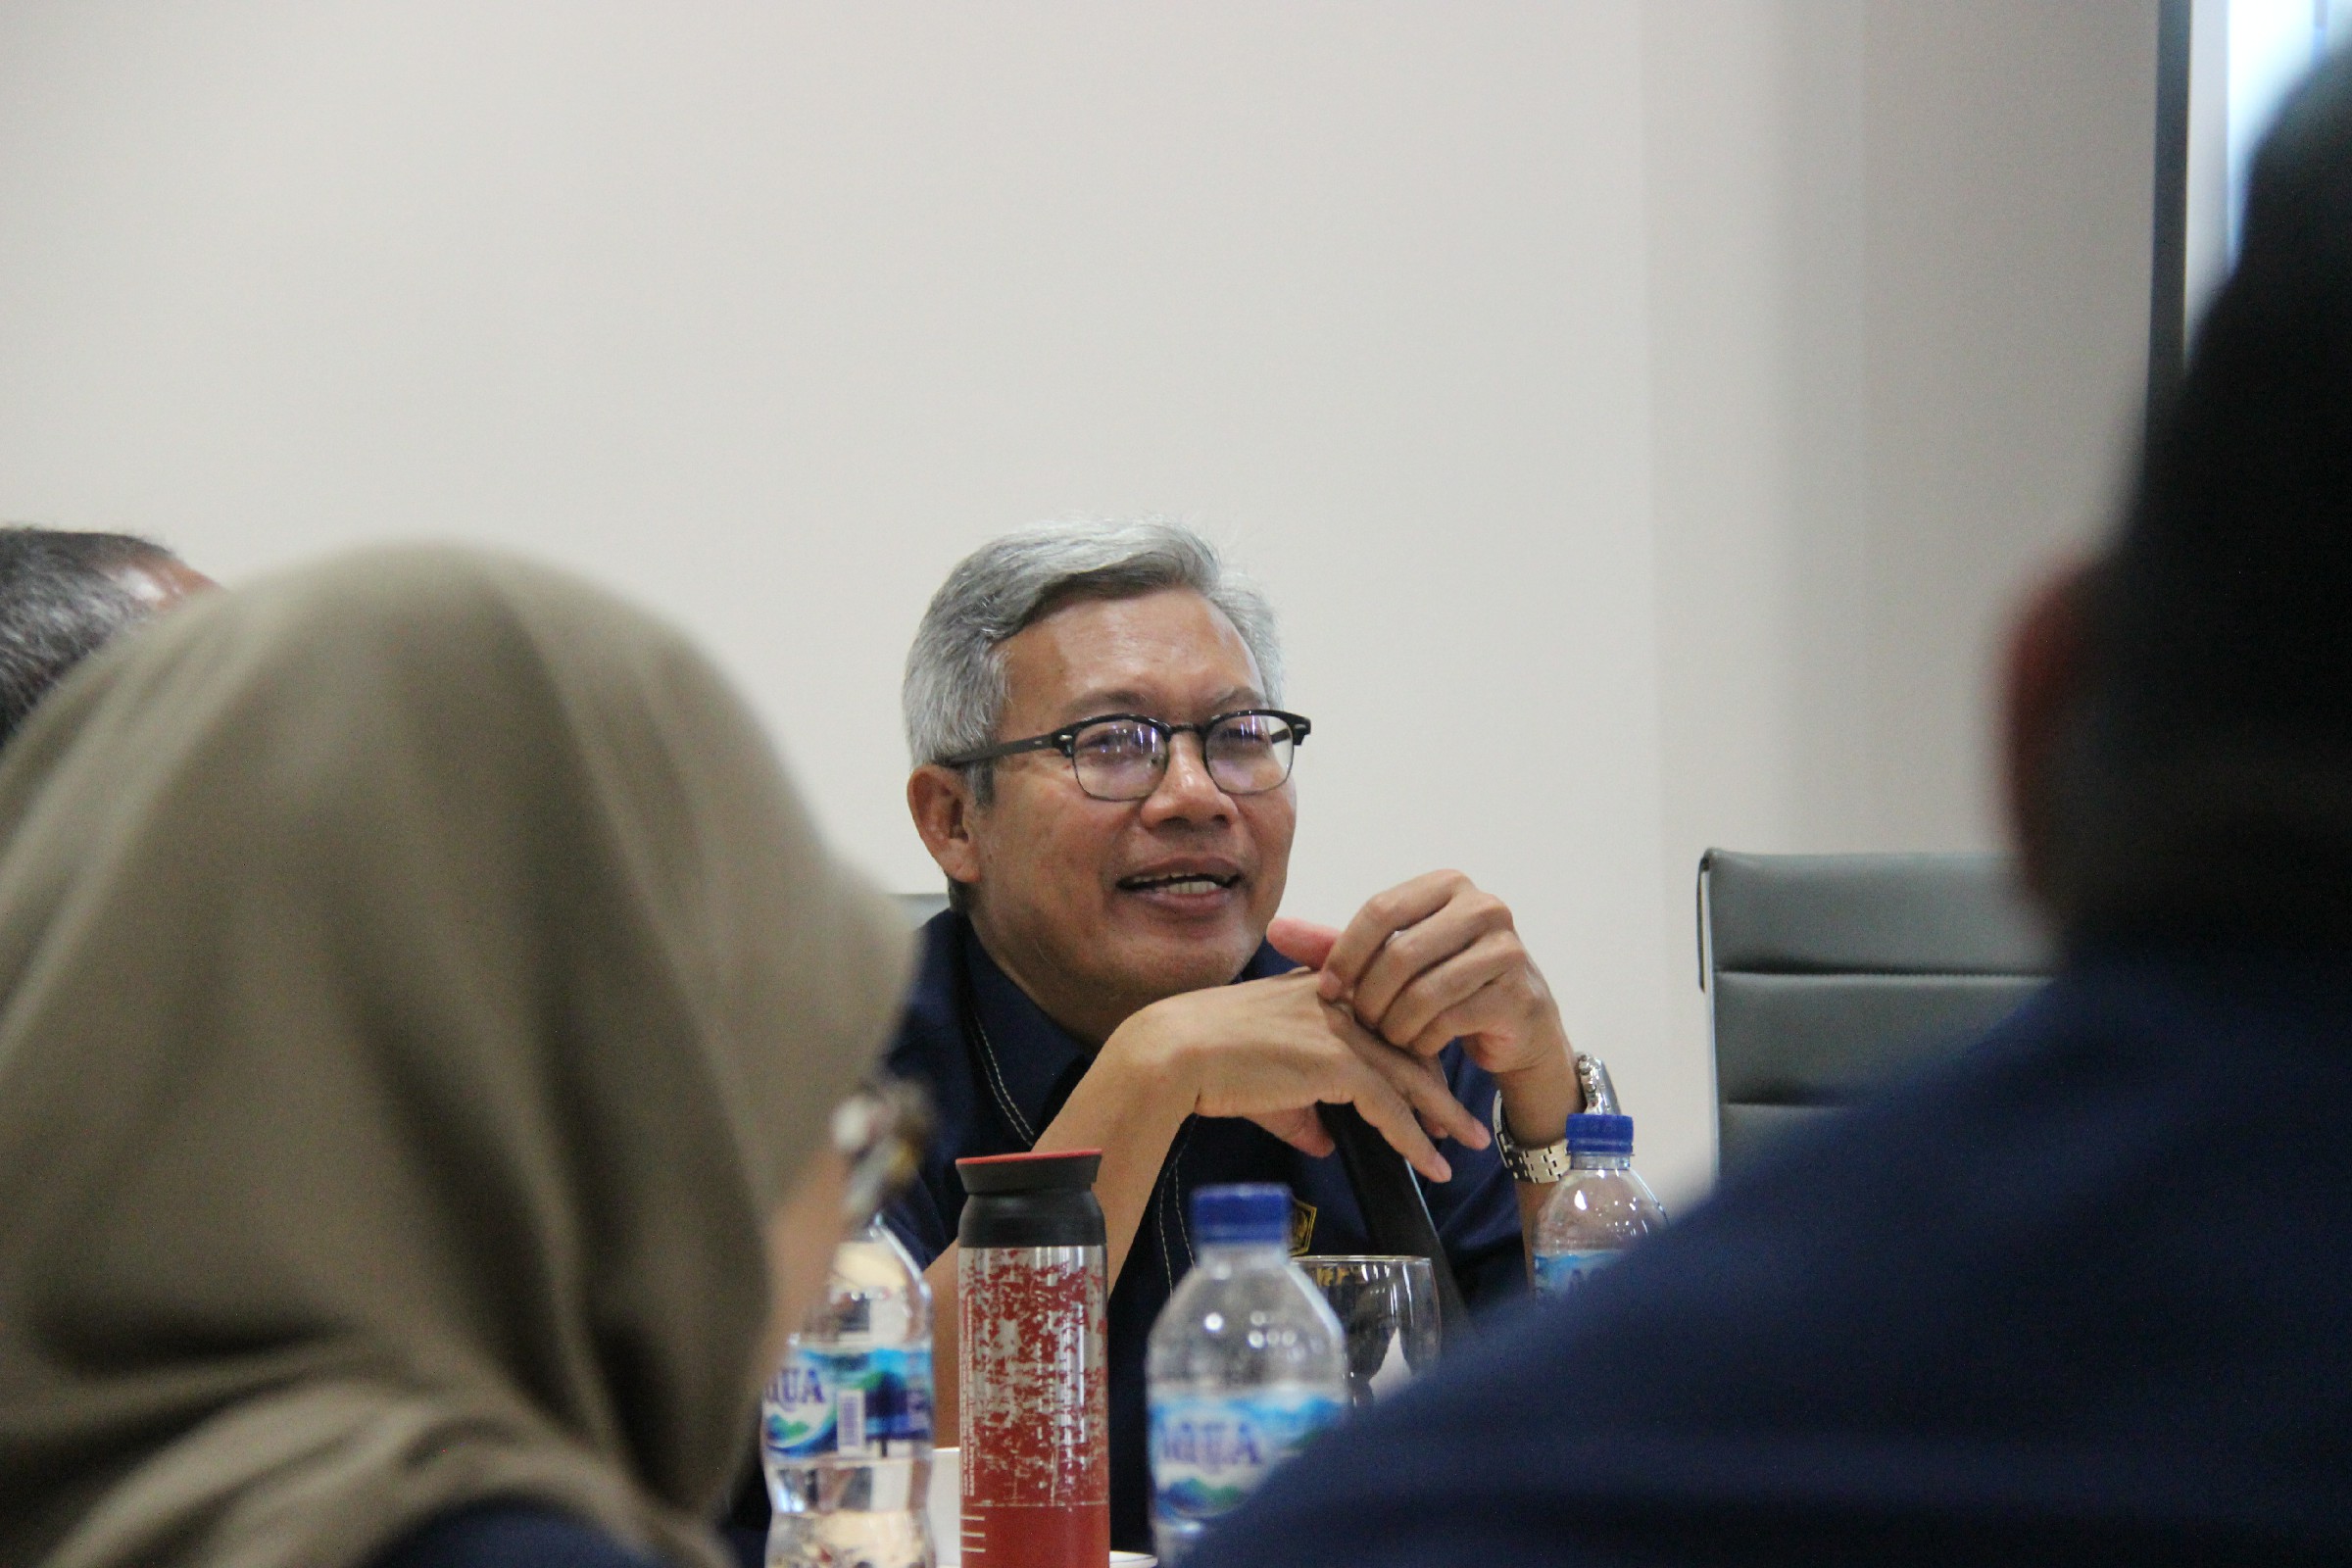 Dekat dengan Ibu Kota Nusantara (IKN), Pegawai Harus Mempunyai Mental dan Mindset Ibukota